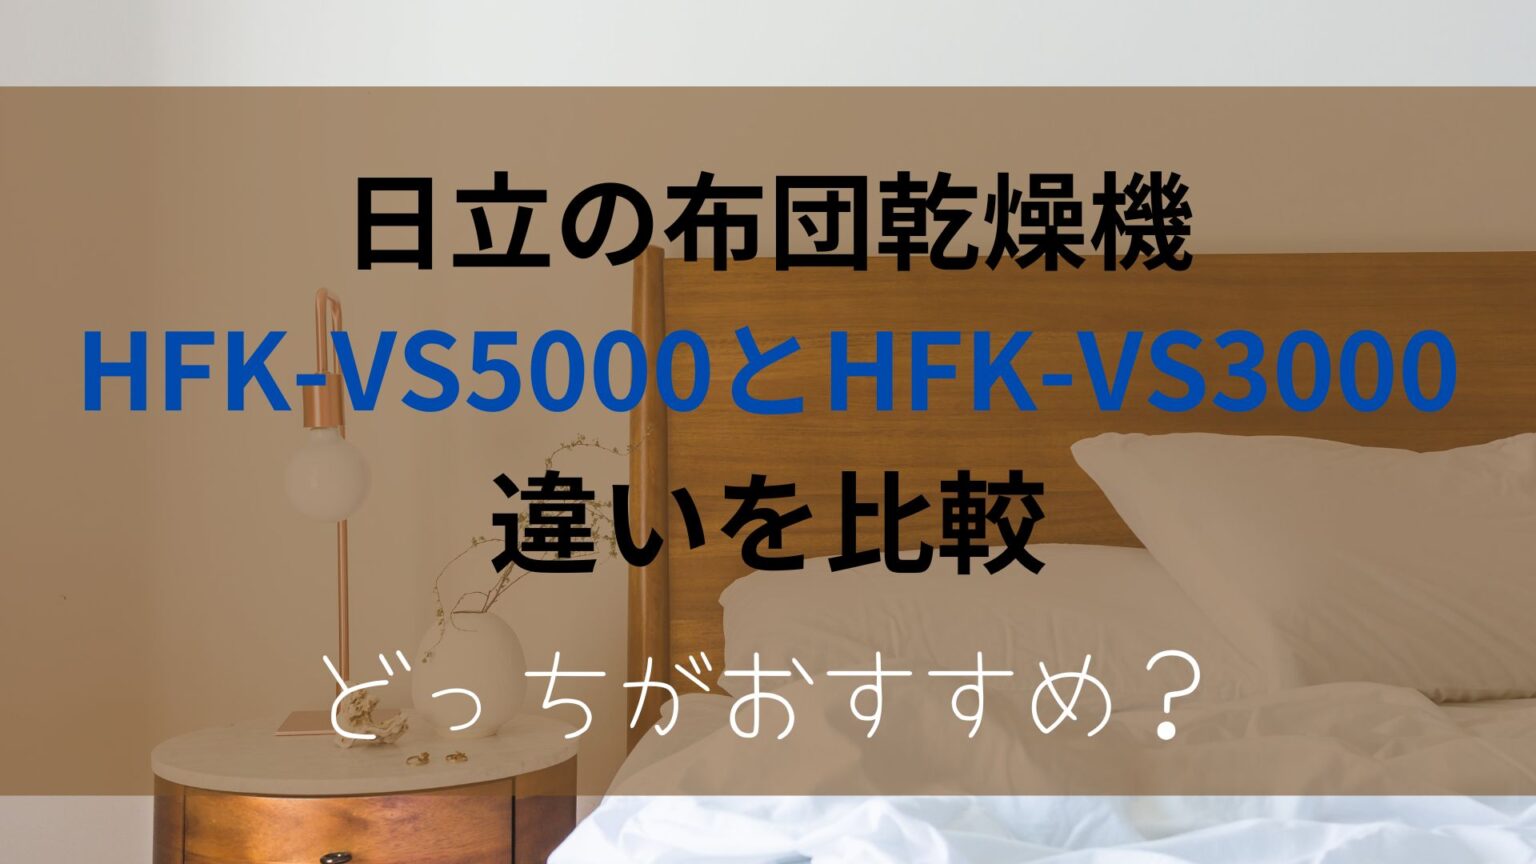 HFK-VS5000とHFK-VS3000の違いを比較！どっちがおすすめ？日立布団乾燥機のアイキャッチ画像